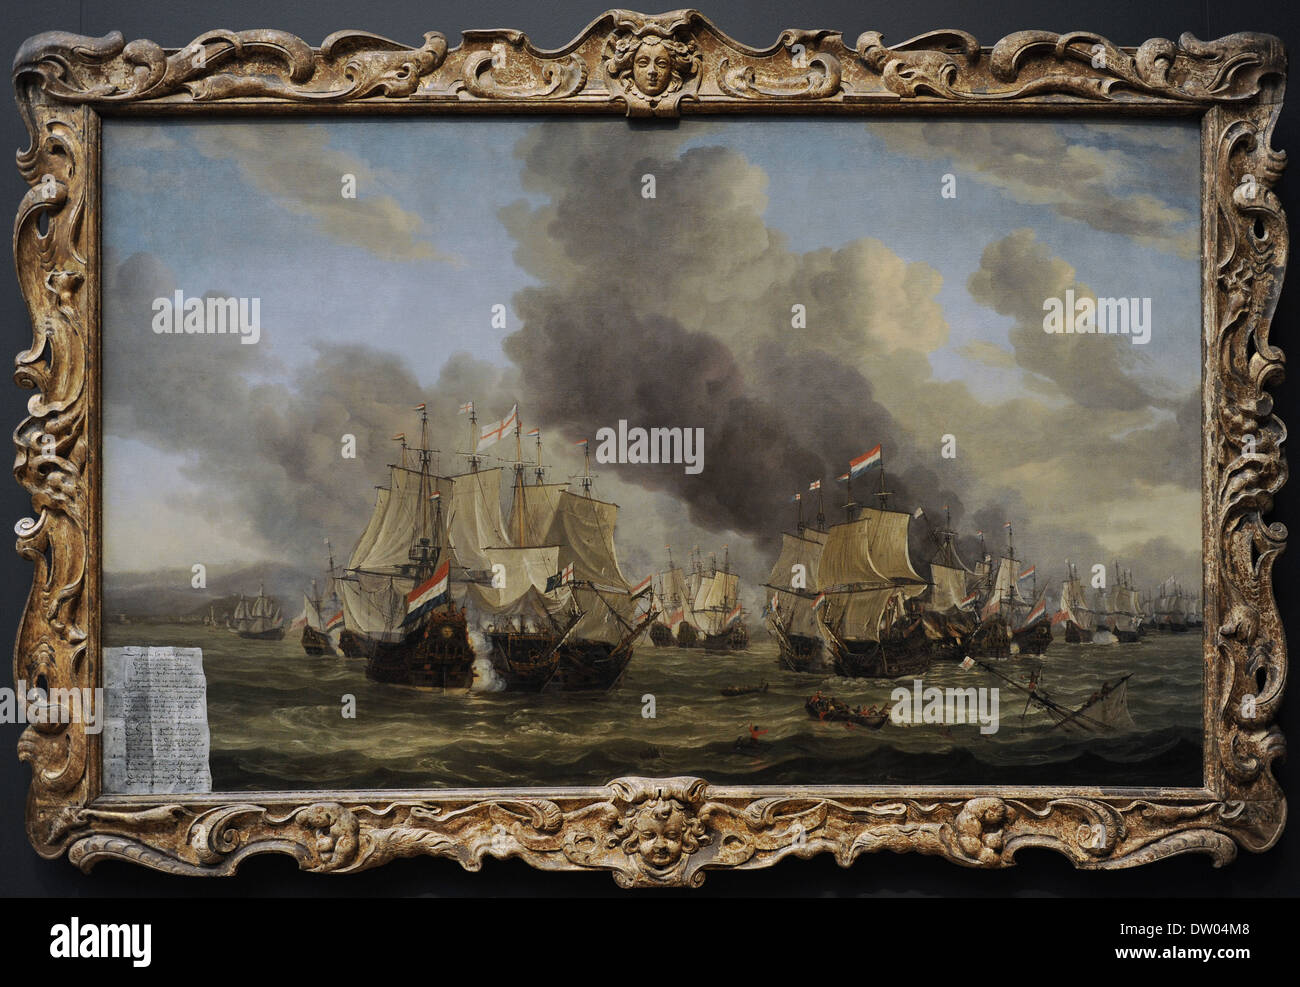 Reinier Nooms, llamado Zeeman (c. 1623-1664). Pintor holandés. La batalla de Livorno, 1653-1664. Rijksmuseum. Amsterdam. Holland. Foto de stock